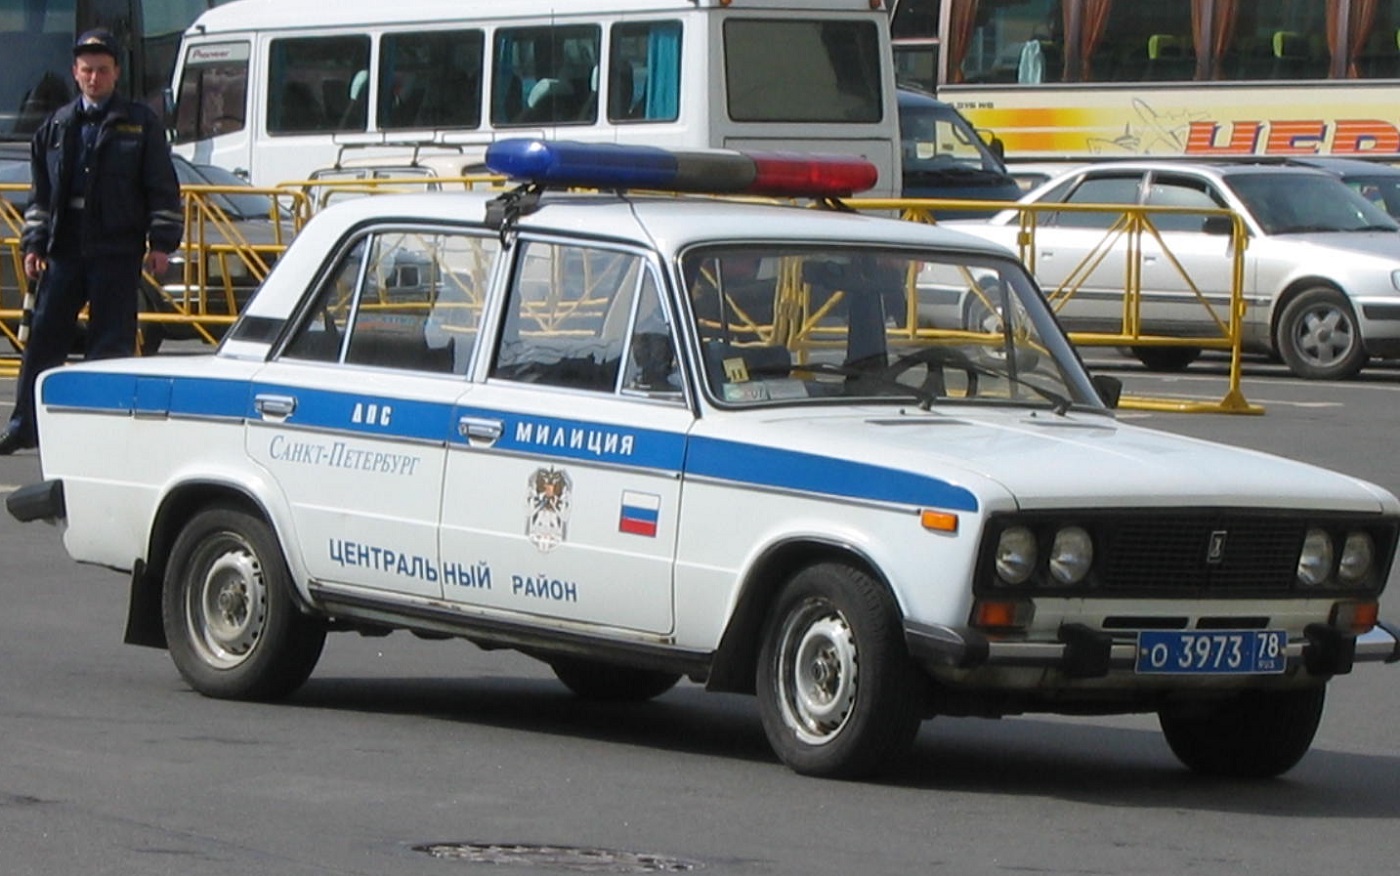 vaz-2106_police_car_in_saint_petersburg_russia.jpg